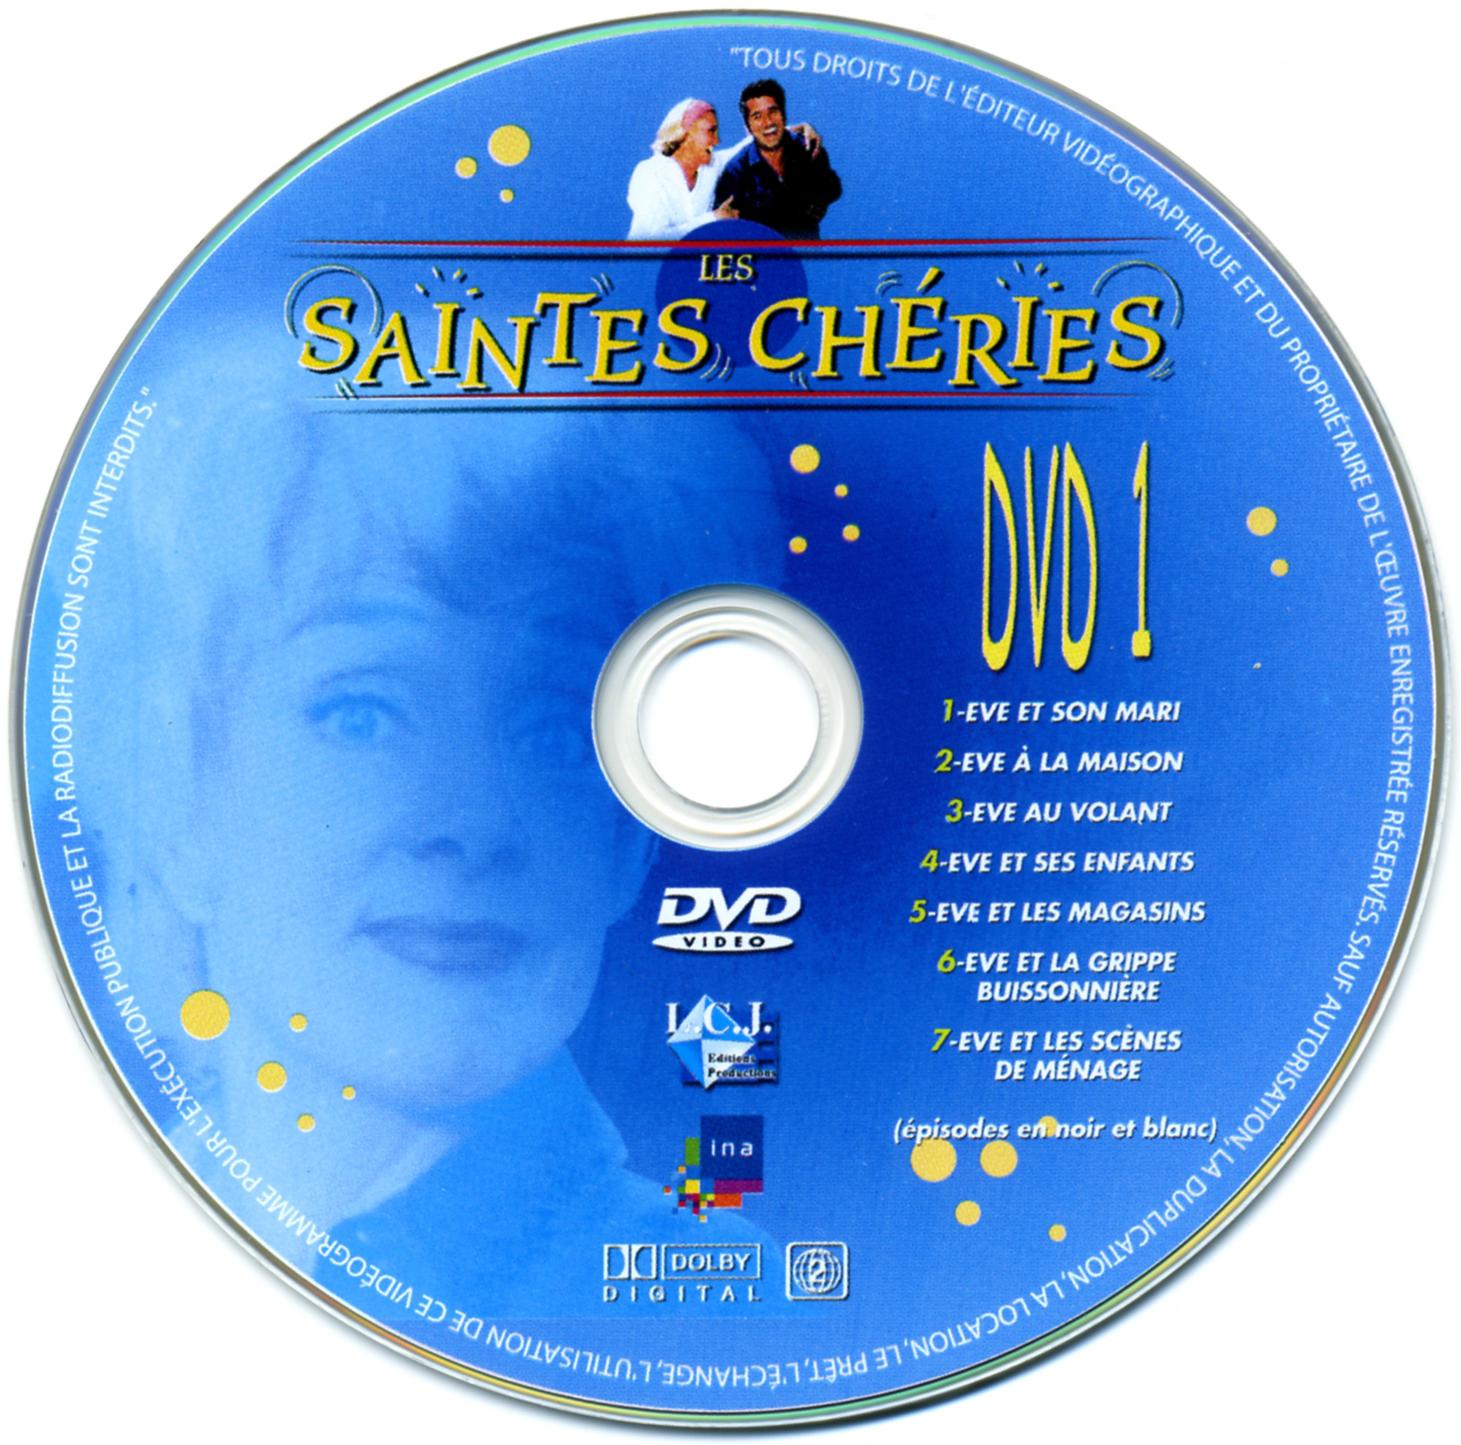 Les Saintes Cheries DISC 1